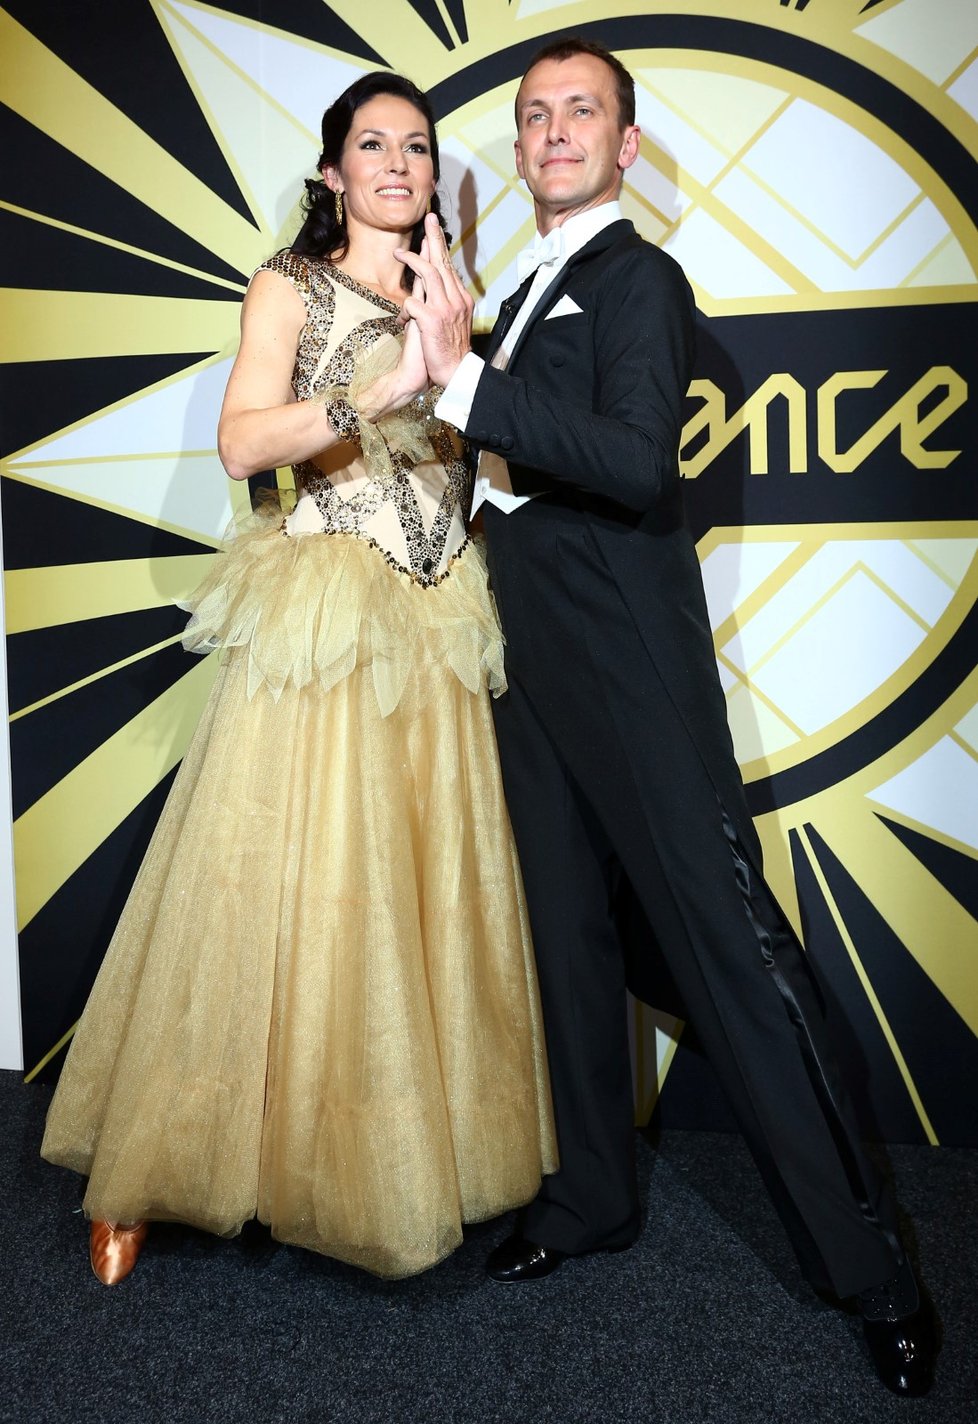 V šesté sérii StarDance tancoval Jan Tománek s basketbalistkou Šárkou Kašpárkovou.